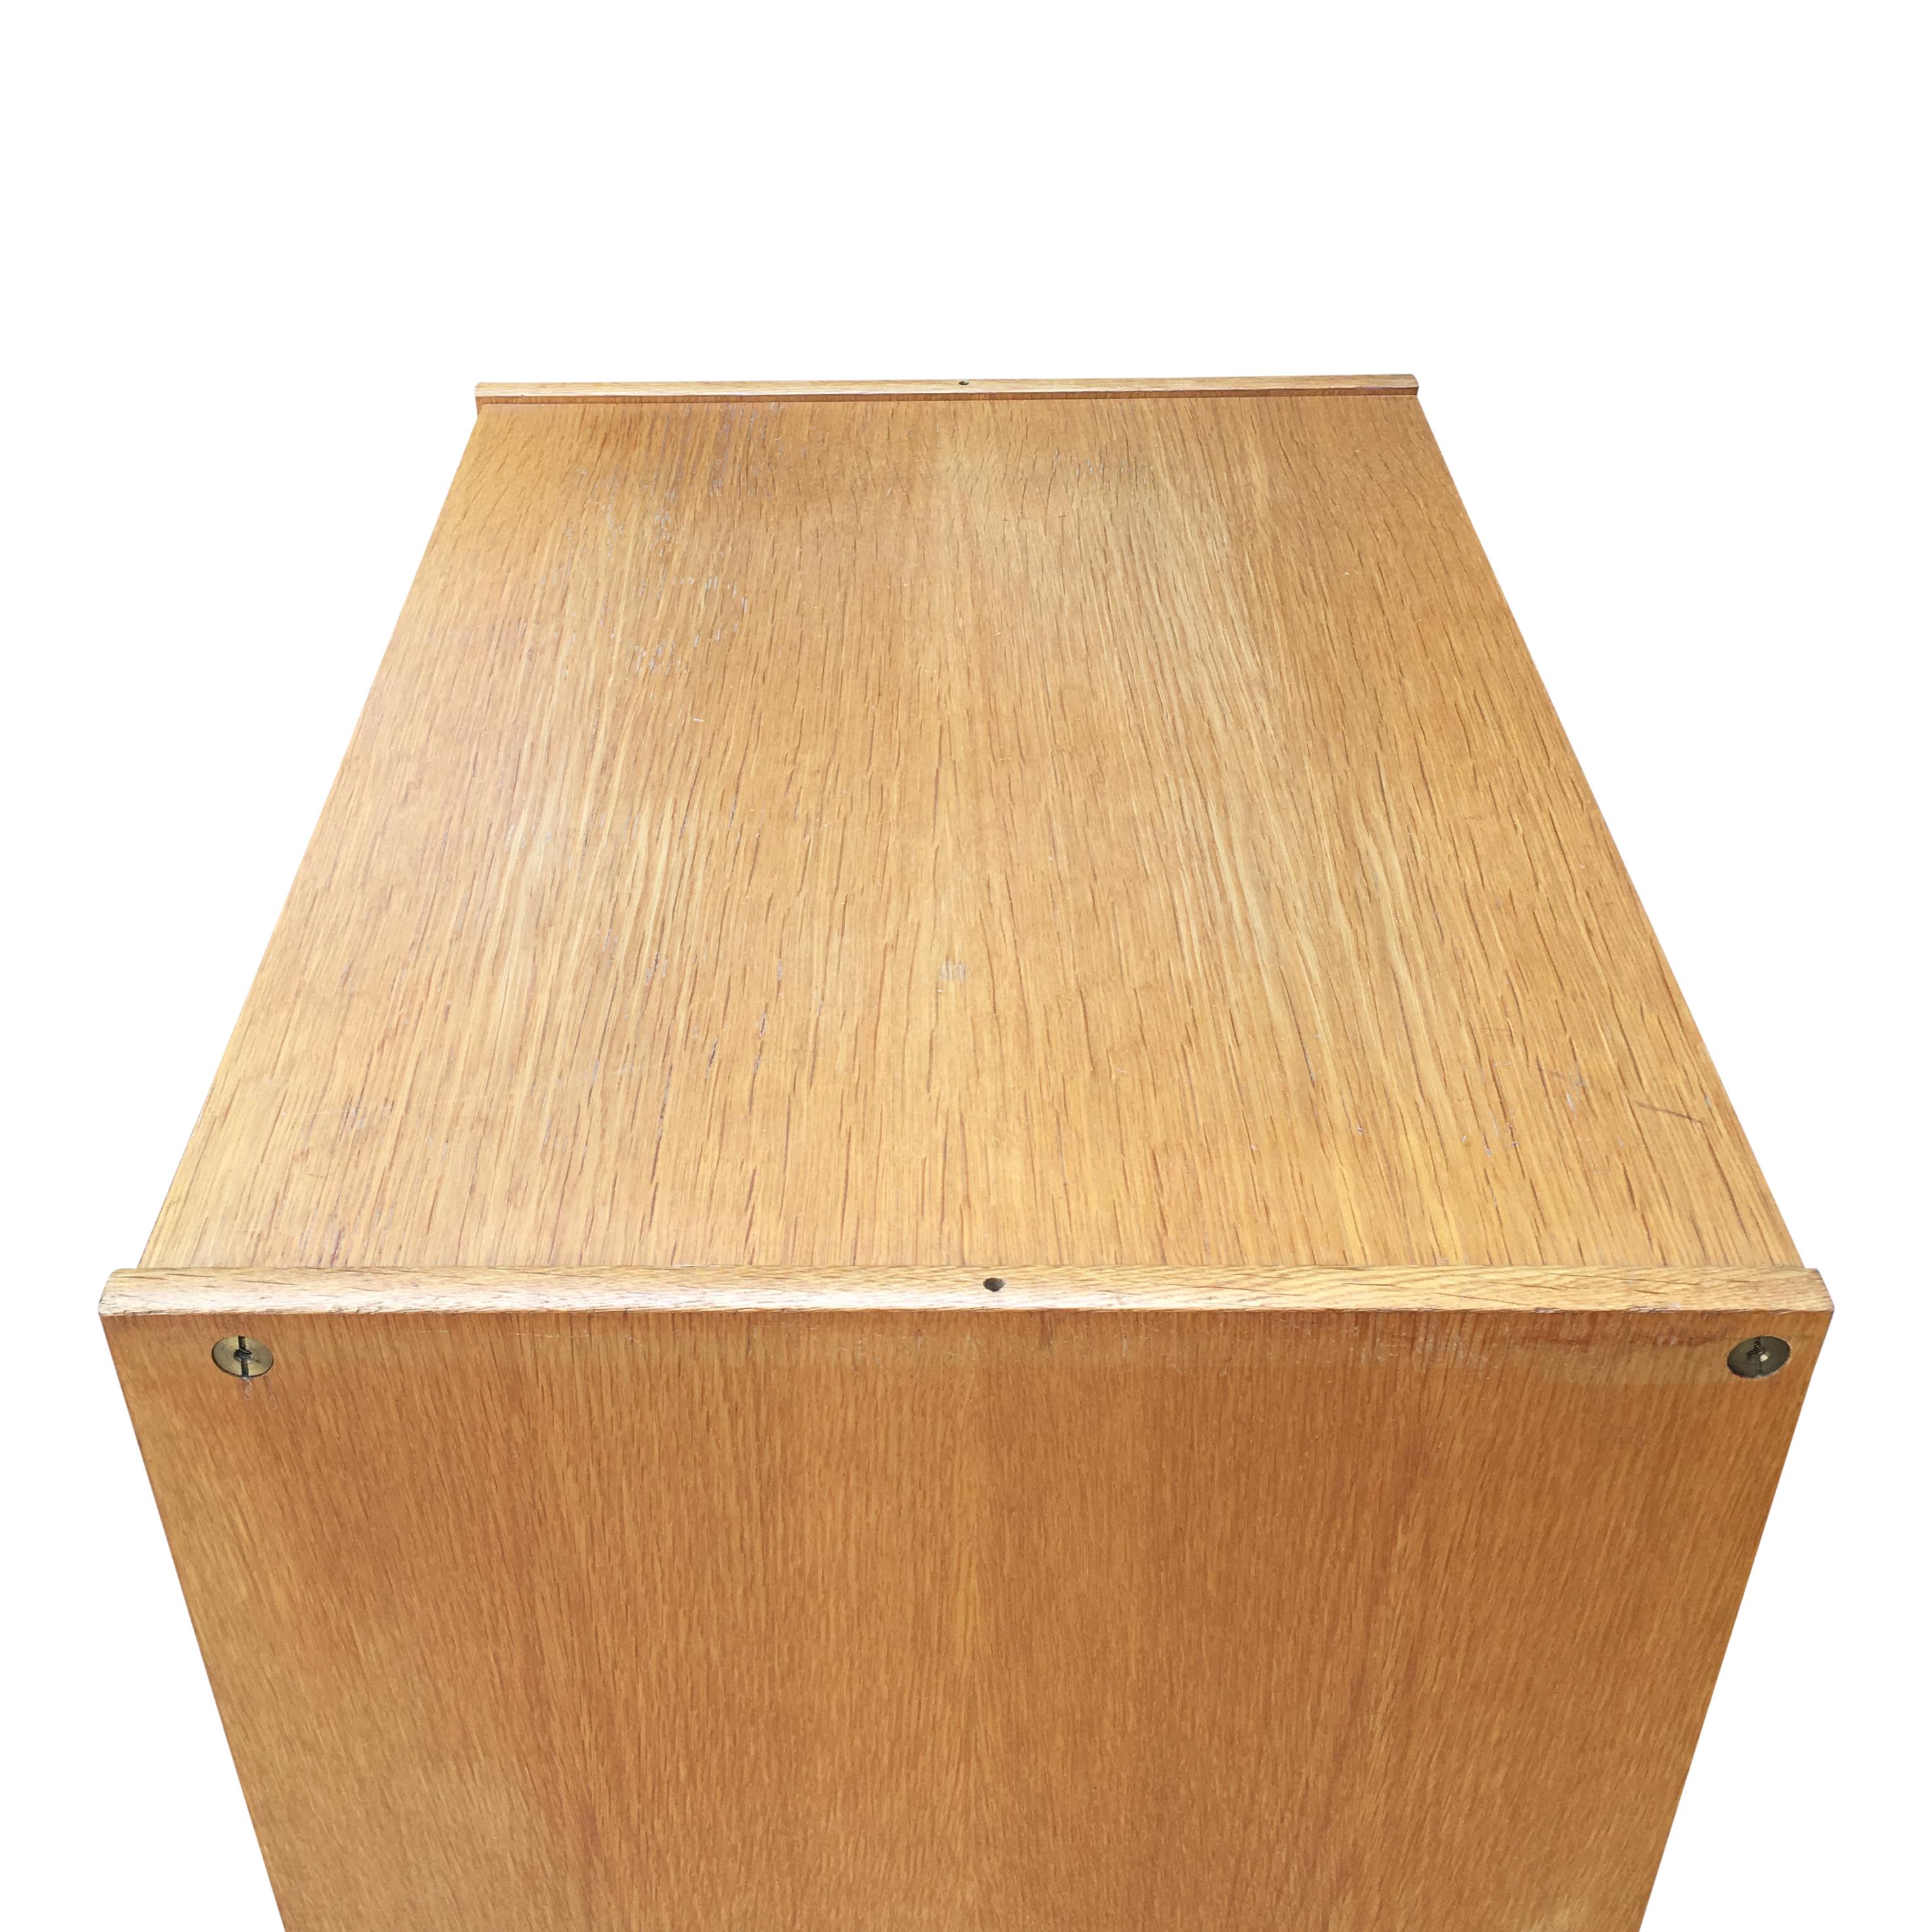 Midcentury Swedish Oak 4-Drawers Cabinet by Bertil Fridhagen for Bodafors, 1963 For Sale 2